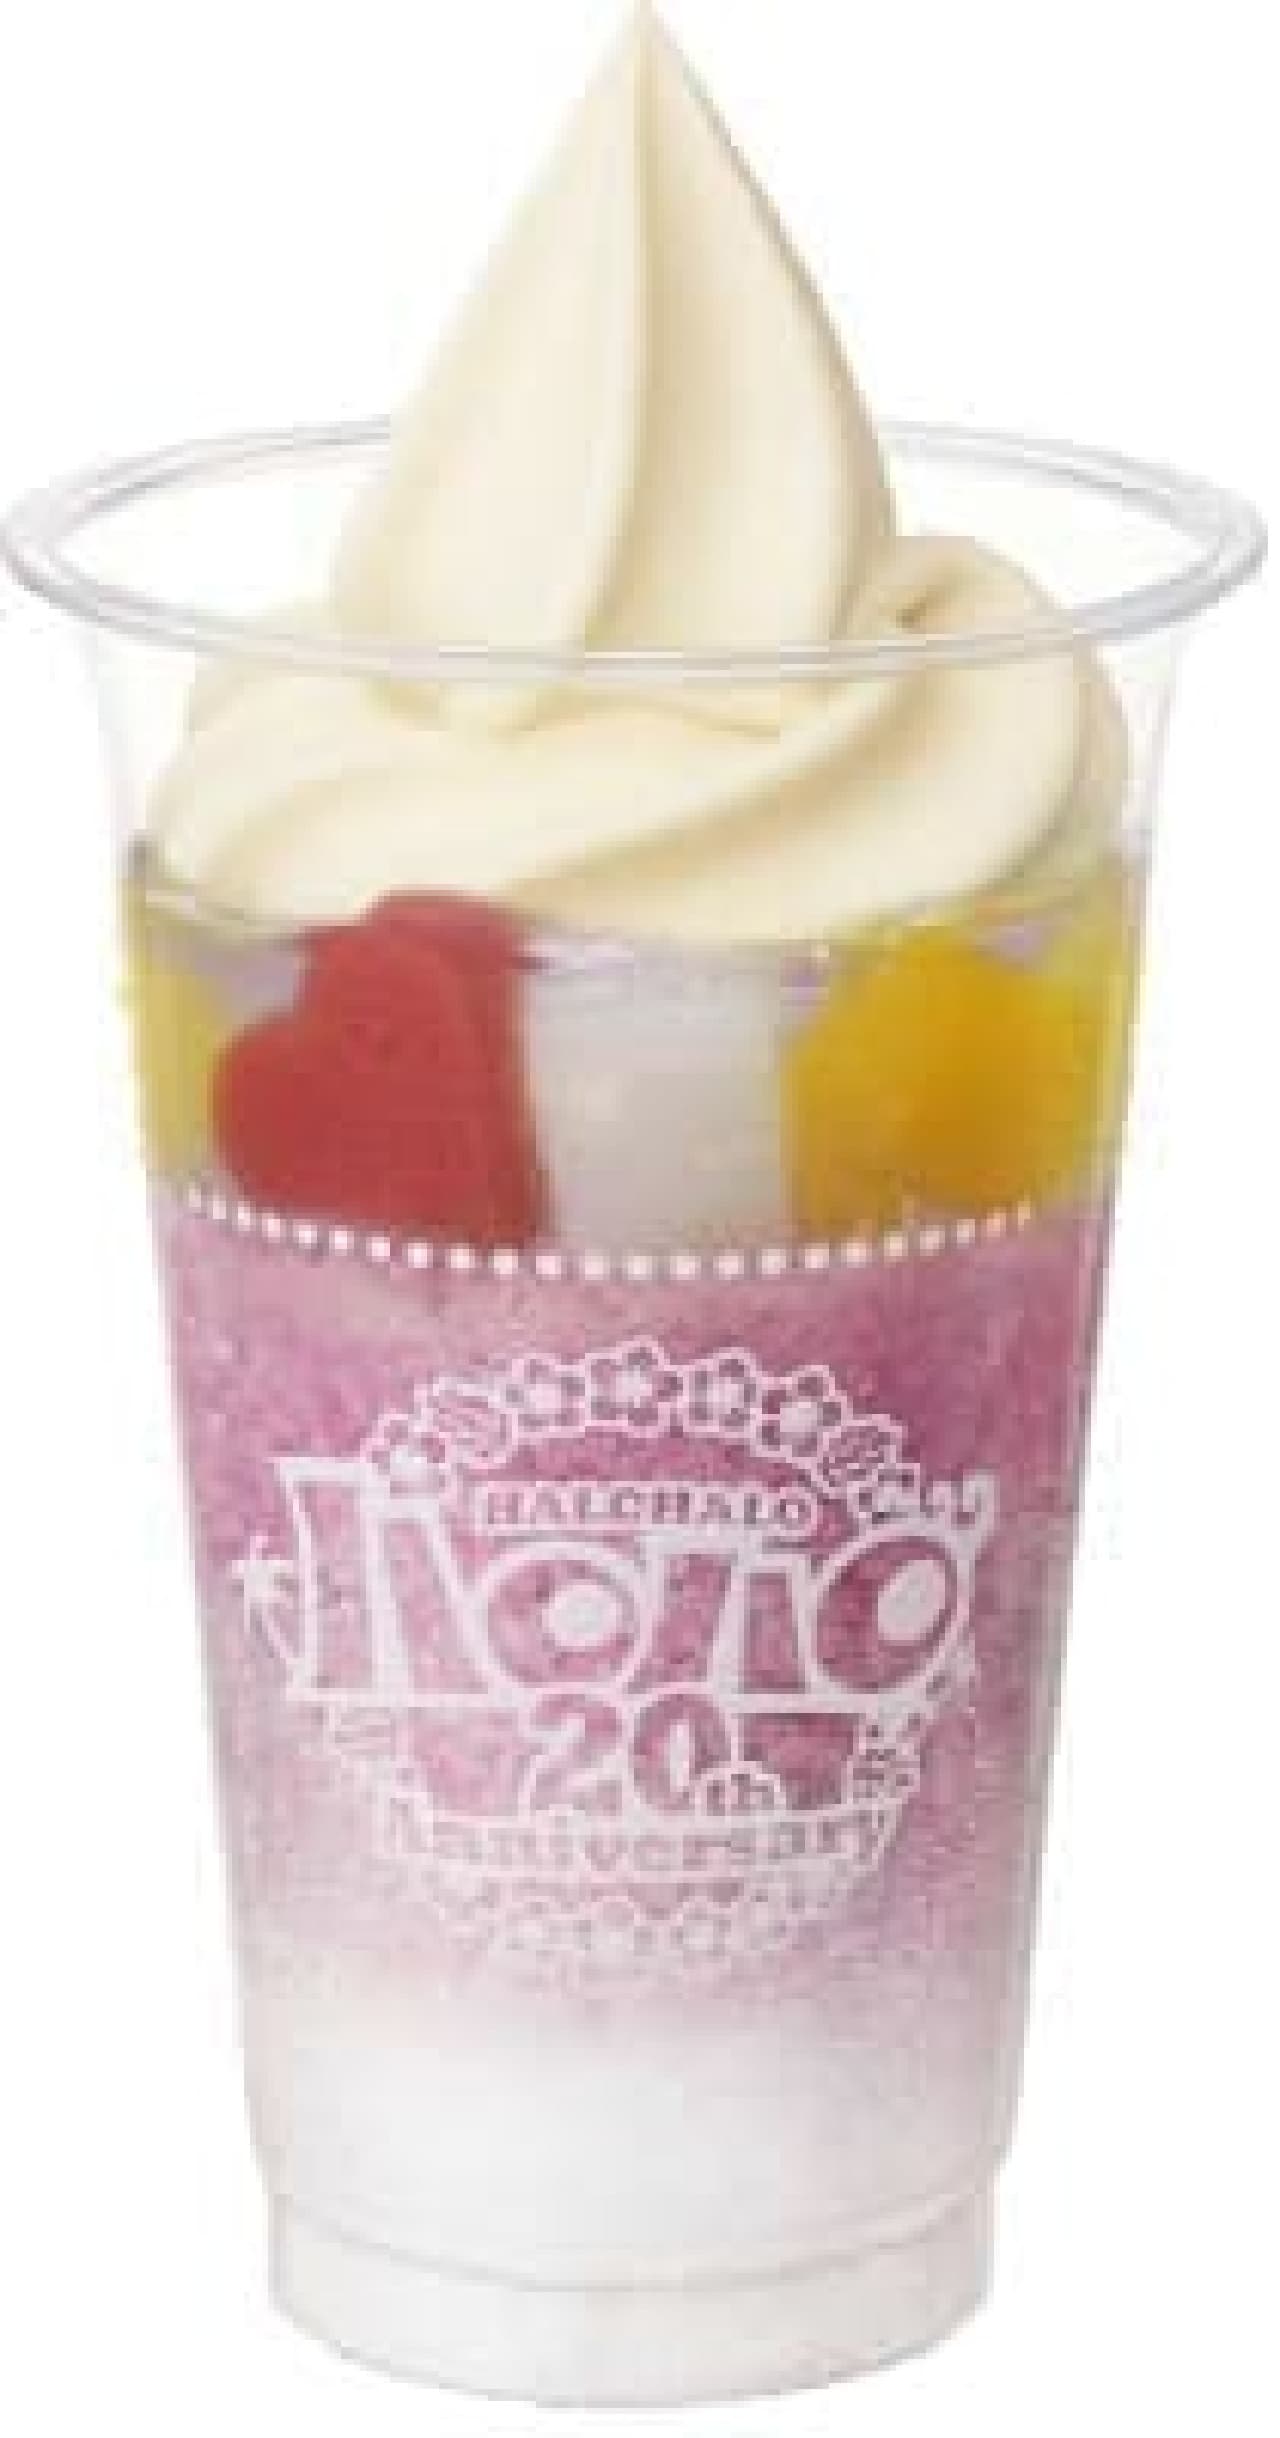 "Halo-halo Kyoho" with Kyoho juice from Nagano prefecture